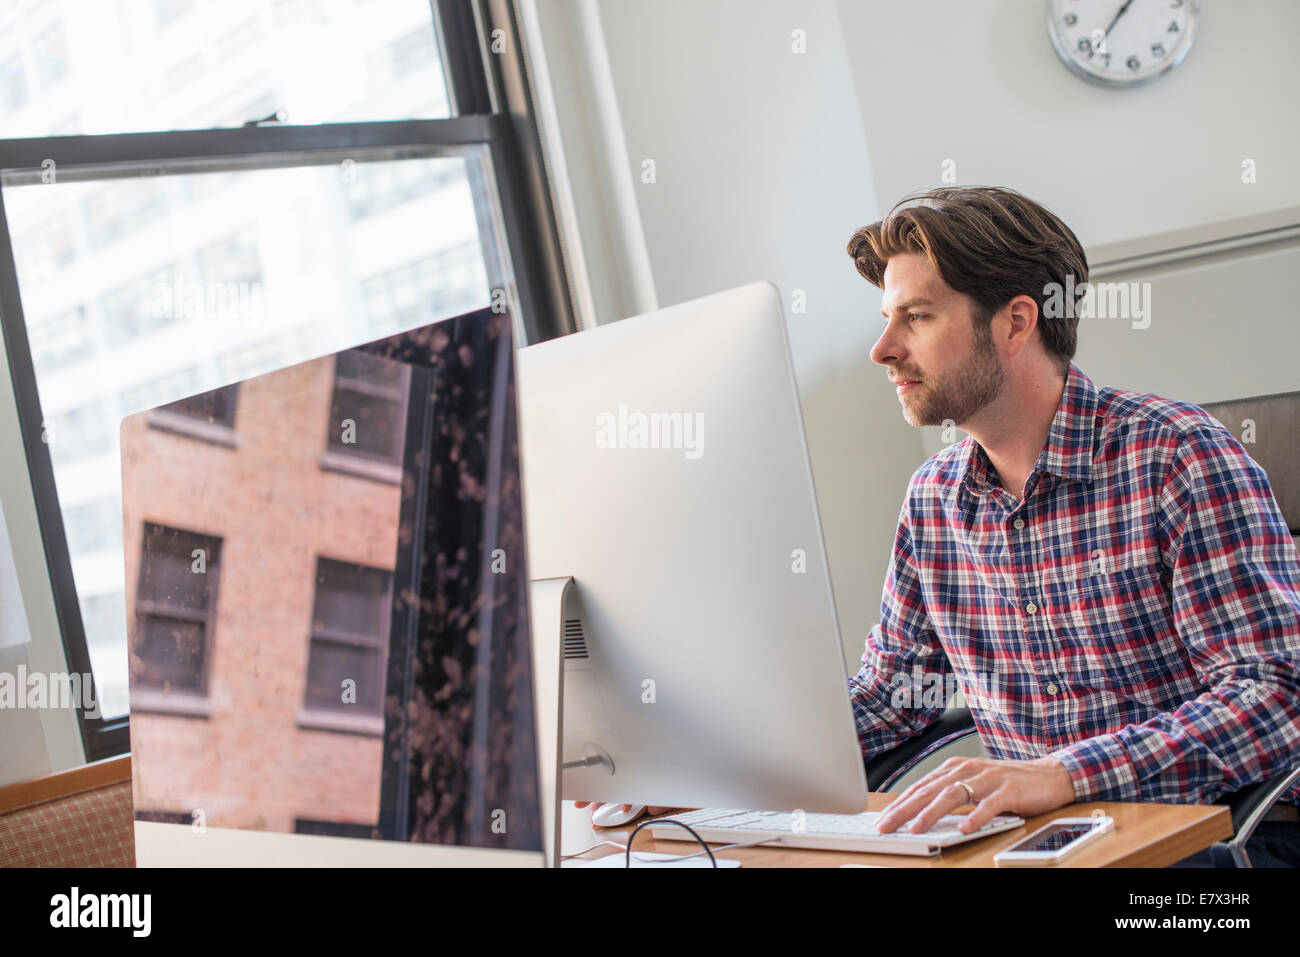 Ein Mann in Achecked Shirt sitzt an einem Schreibtisch mit einem Computer. Stockfoto